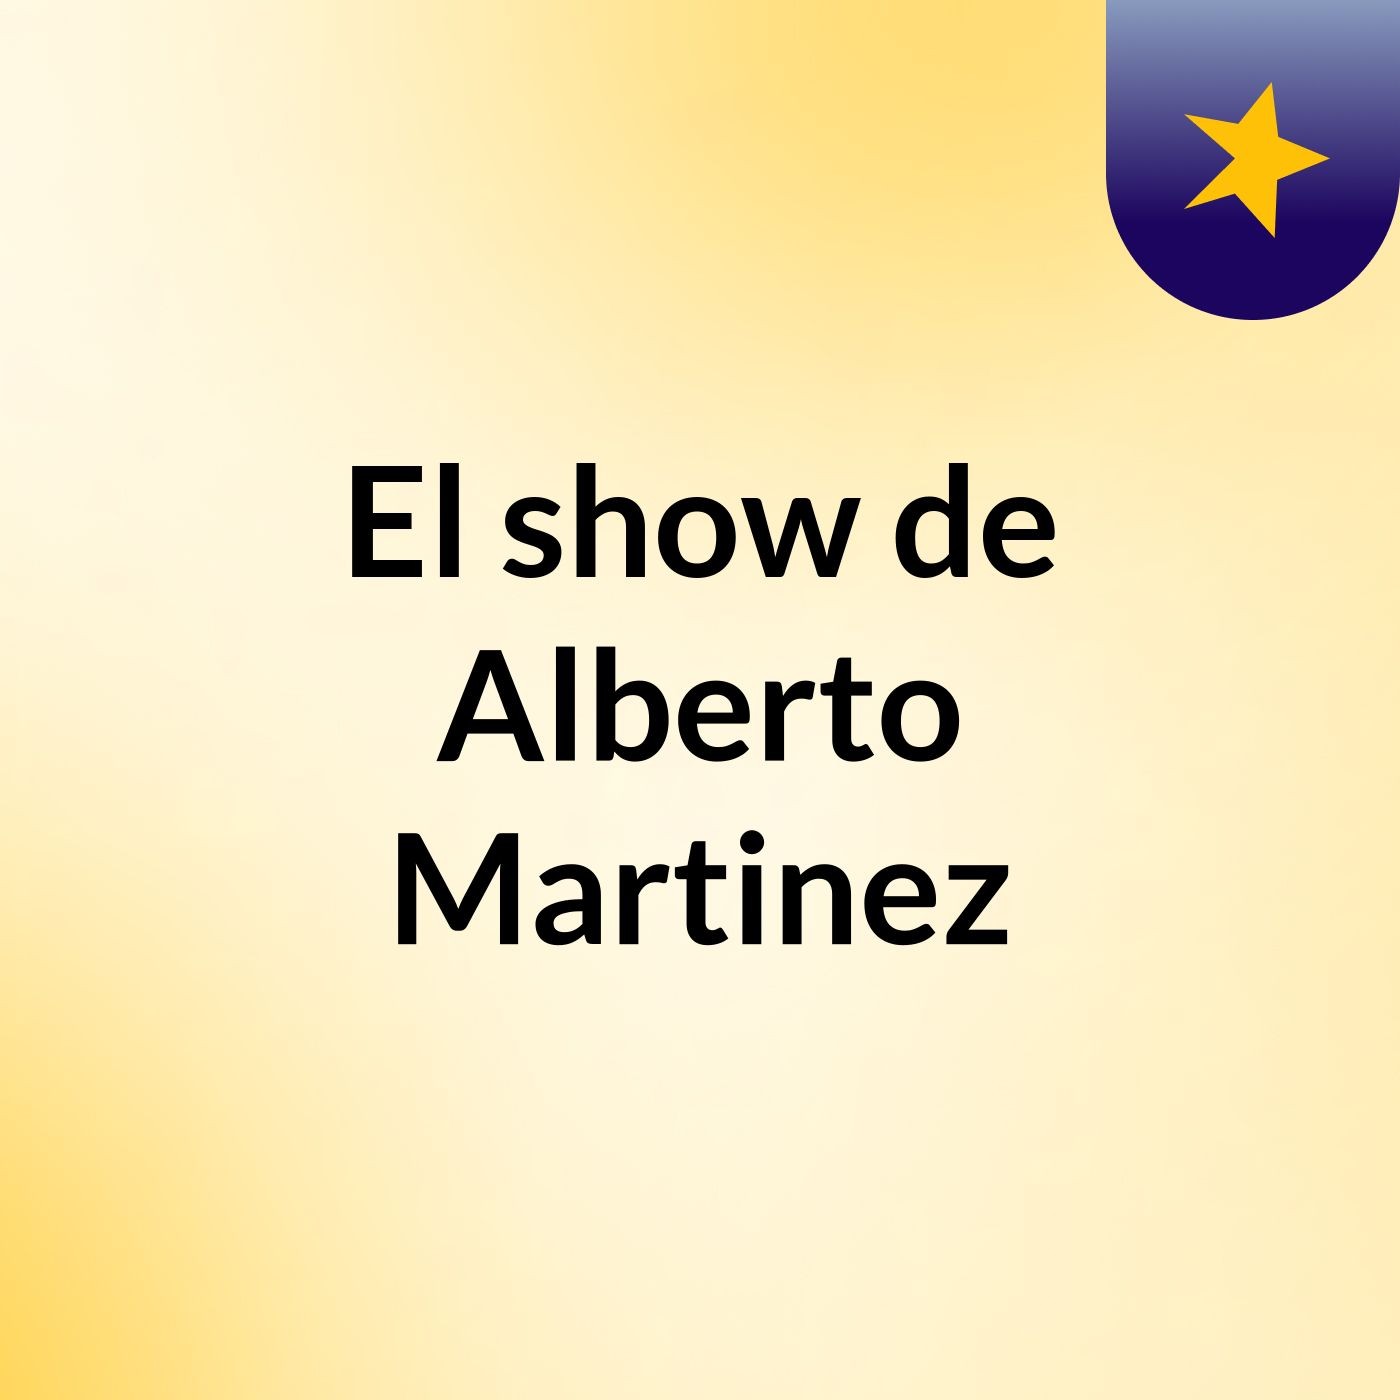 El show de Alberto Martinez